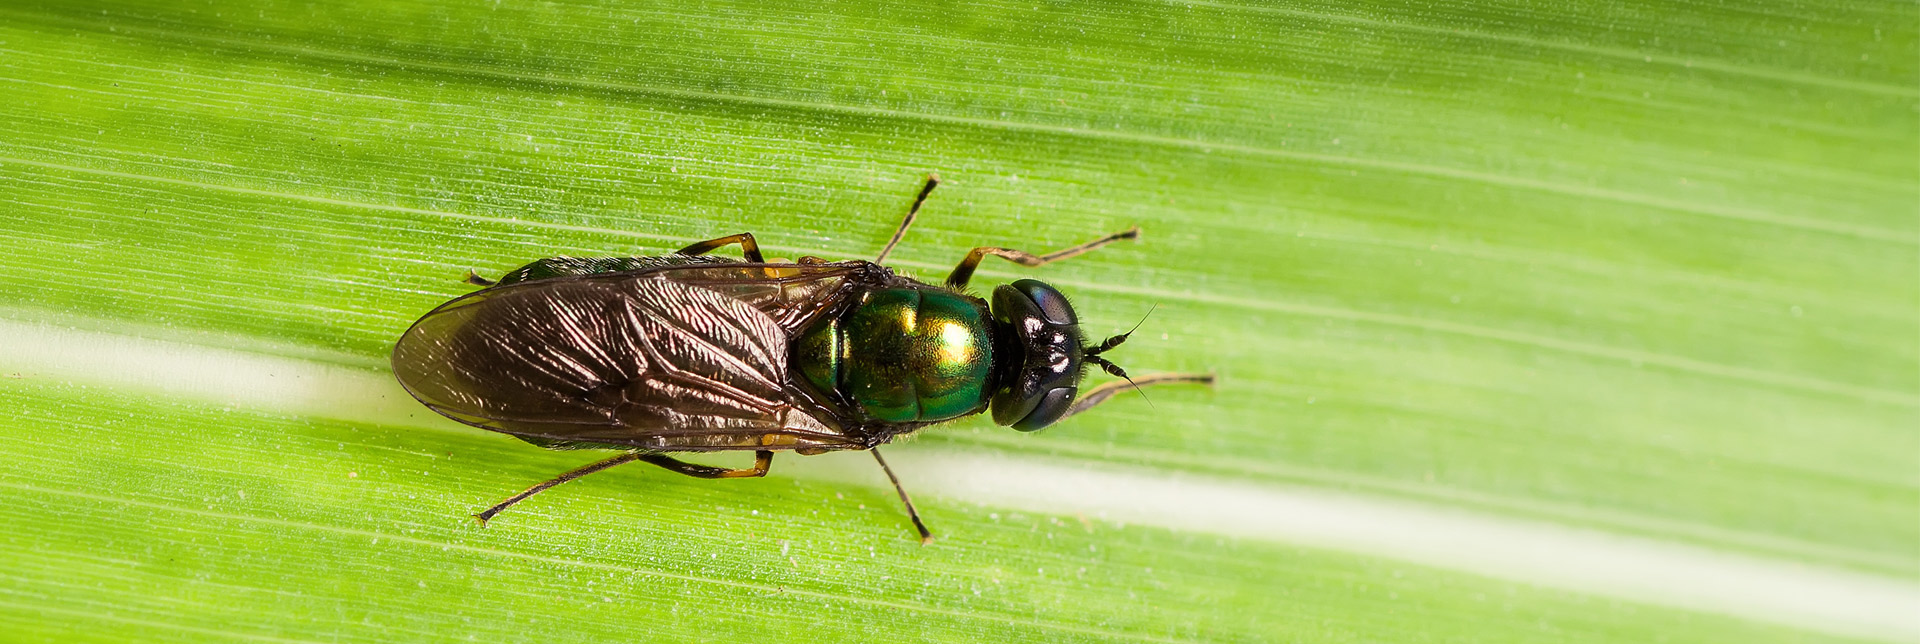 Los insectos: el alimento del futuro para una agricultura sostenible